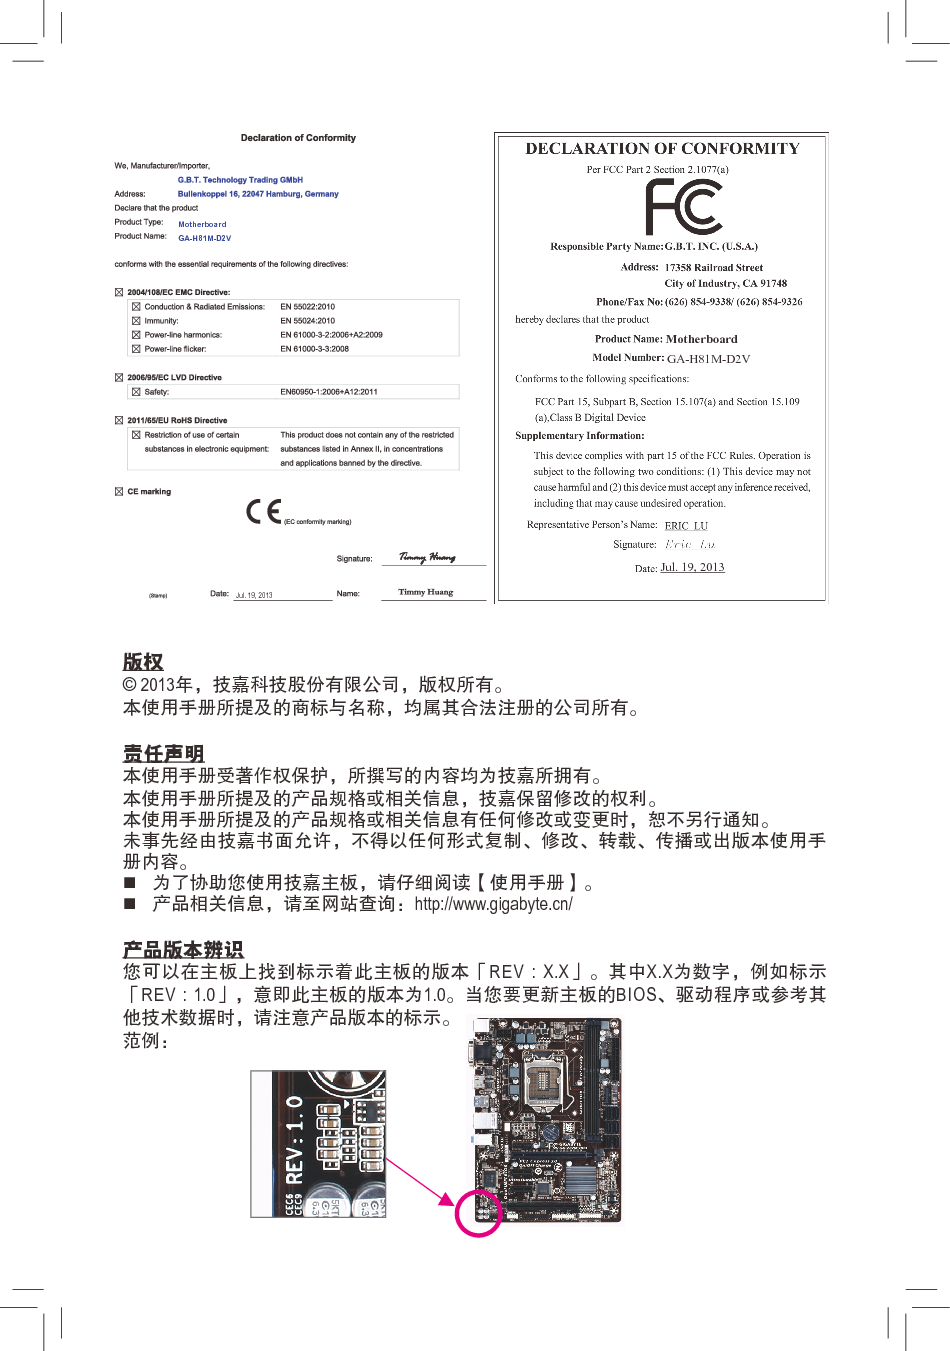 技嘉 Gigabyte GA-H81M-D2V 使用手册 第1页